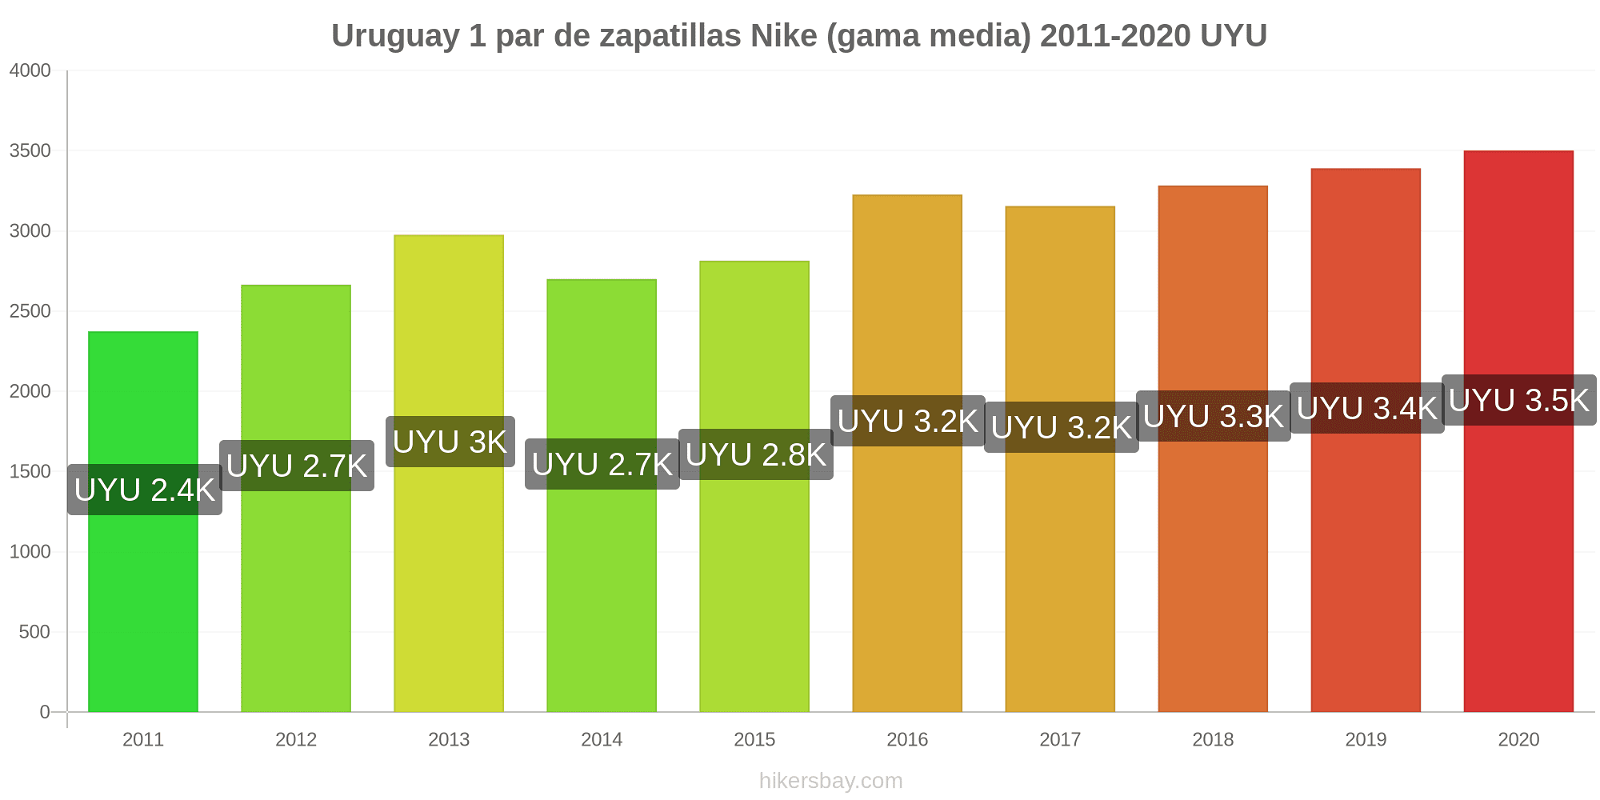 Uruguay cambios de precios 1 par de zapatillas Nike (gama media) hikersbay.com